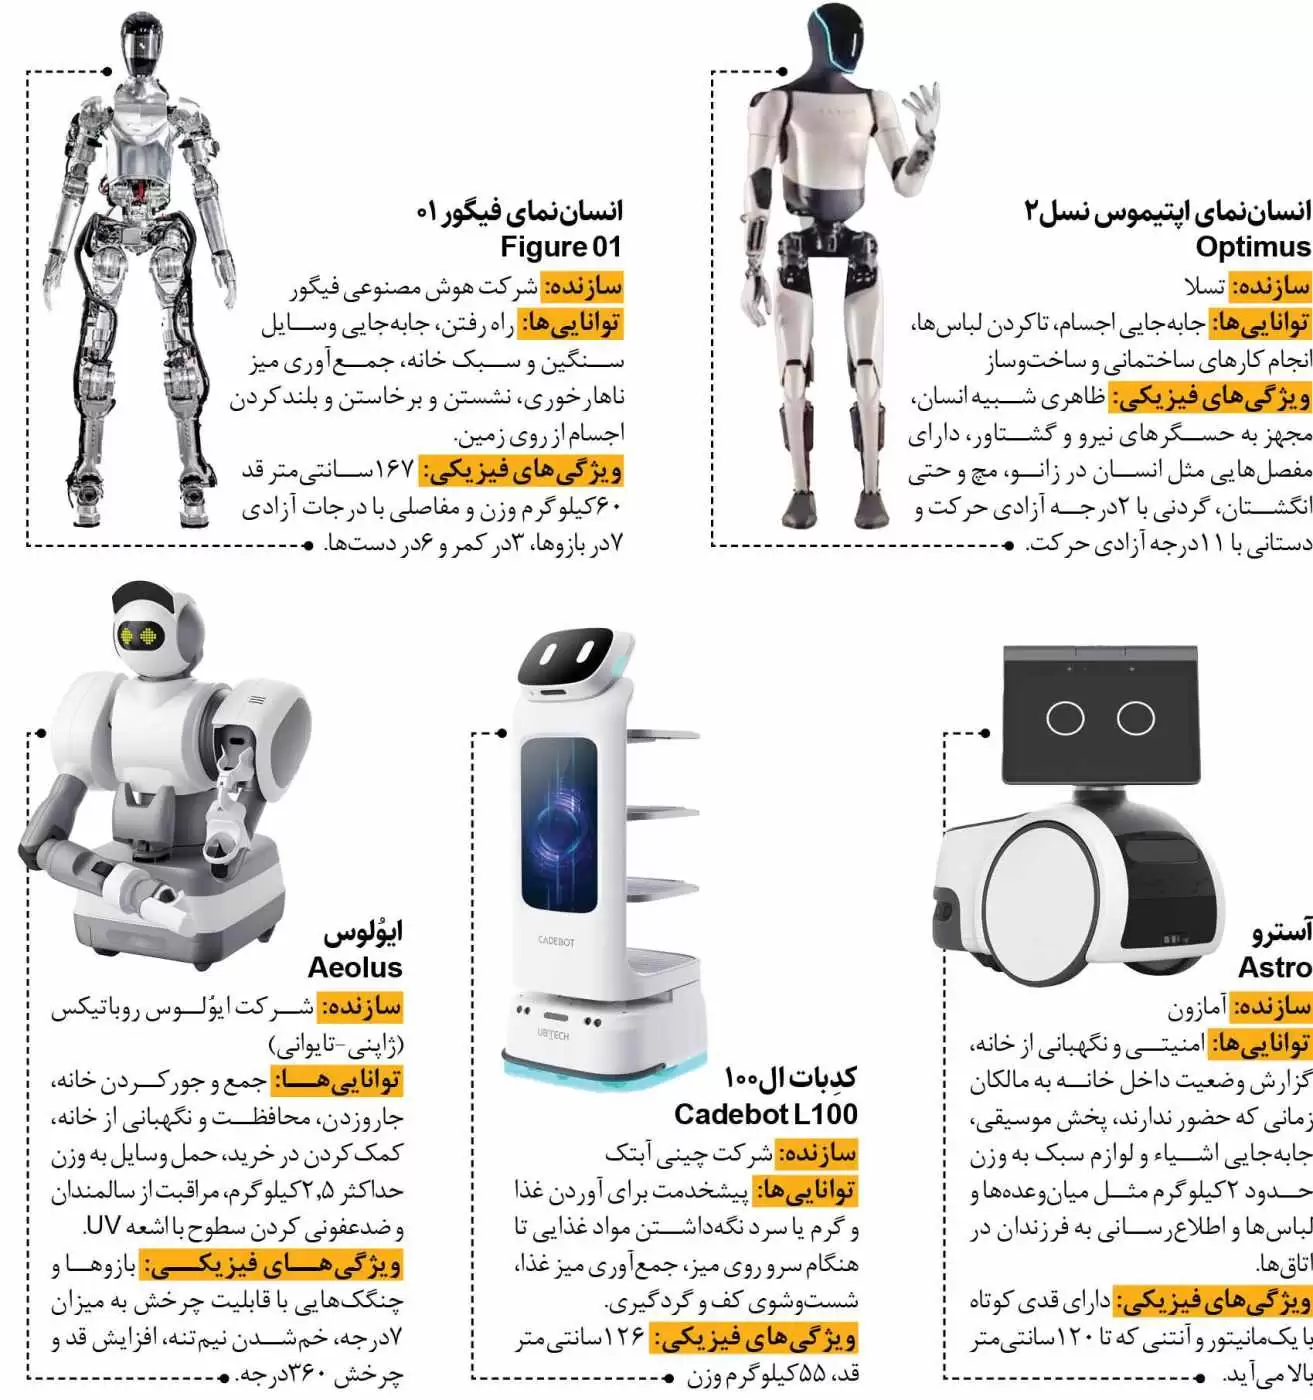 خانه  را به روبات ها بسپارید  -  معرفی چند روبات که به شما خدمت خواهند کرد